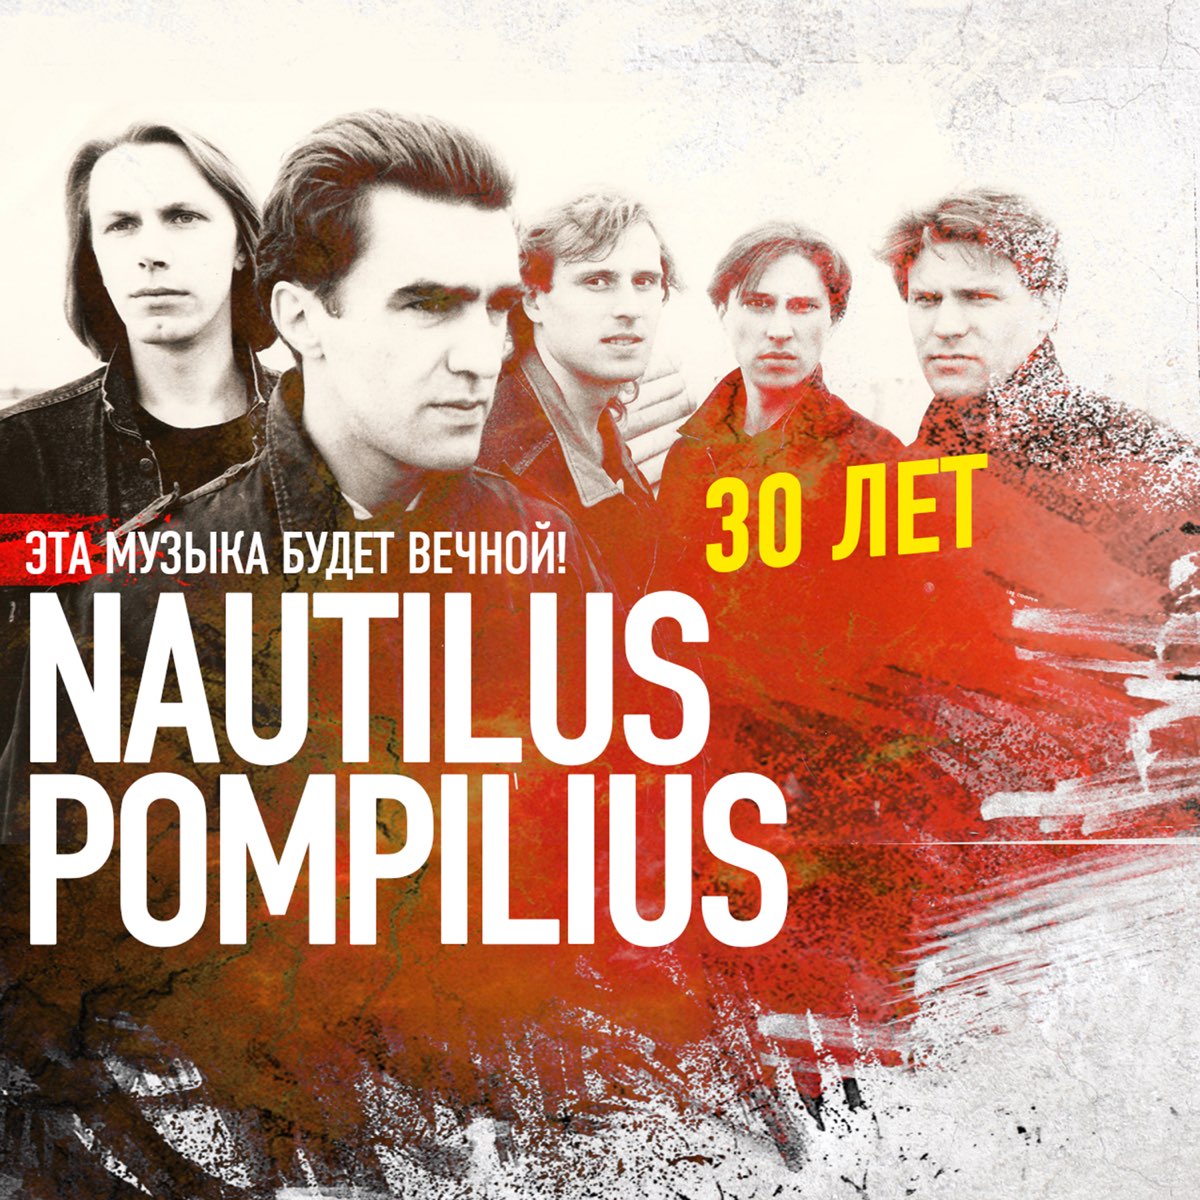 Наутилус Помпилиус. Наутилус группа. Наутилус 1992. Группа Nautilus Pompilius плакат. Бывшие 1 музыка песни